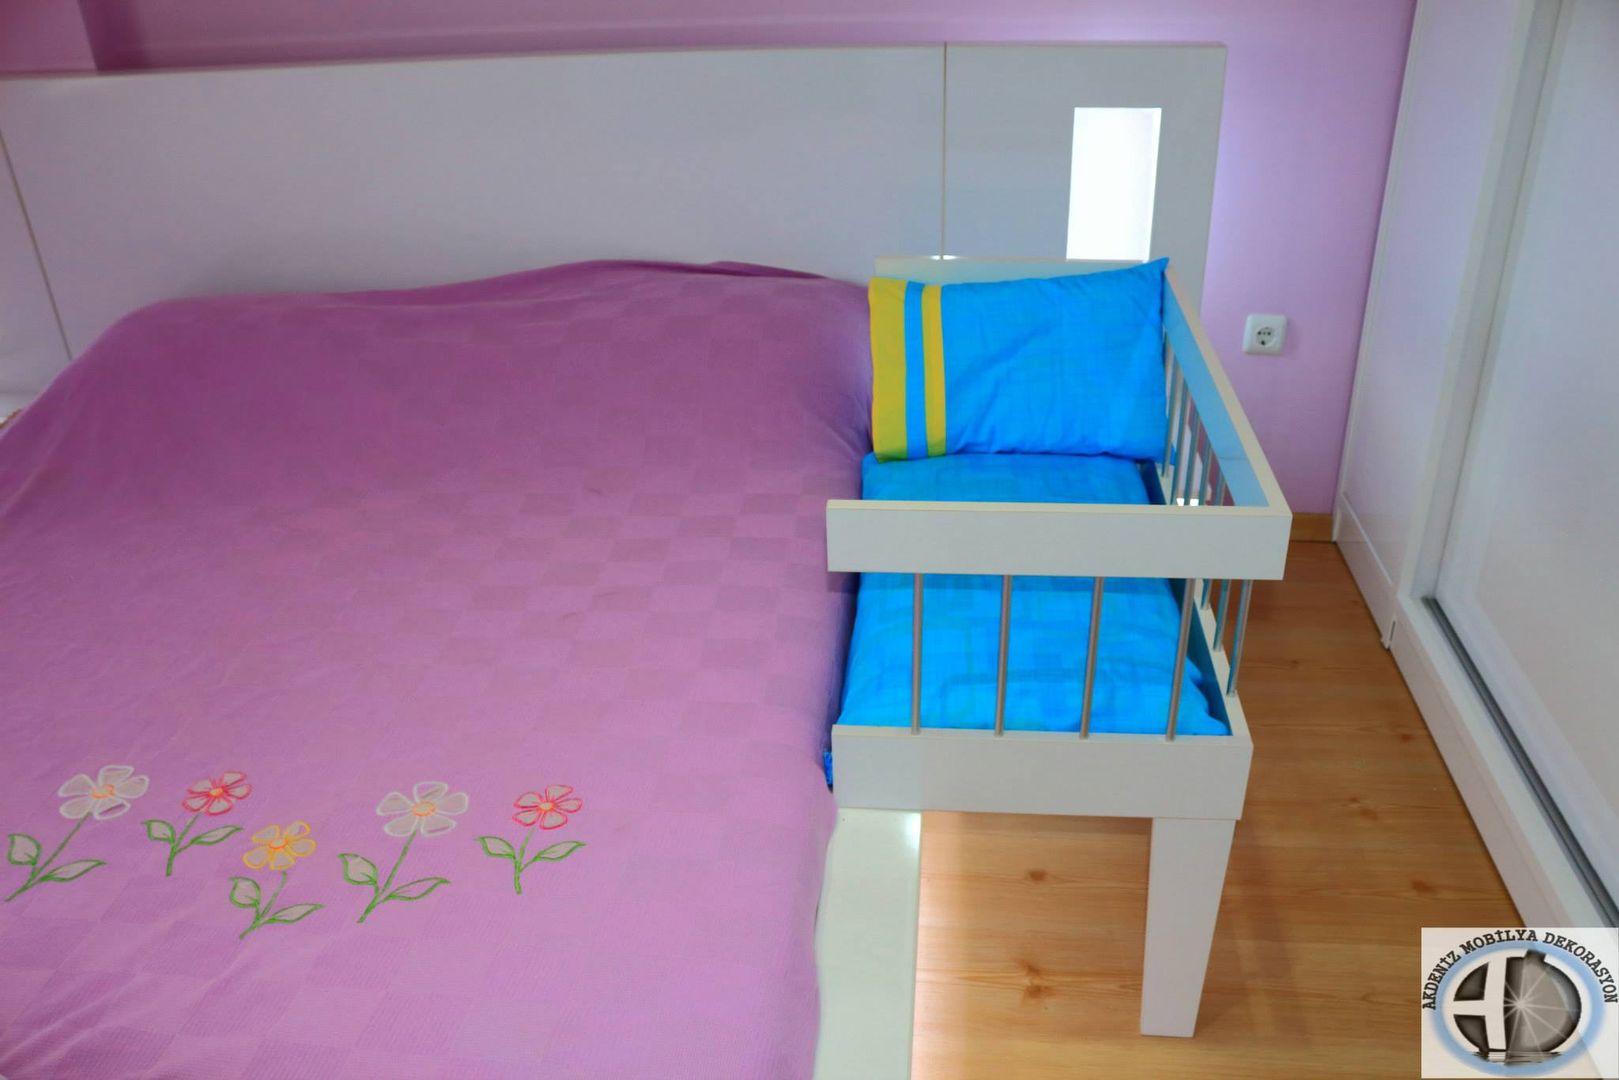 Anne Yanı Beşiği, Akdeniz Dekorasyon Akdeniz Dekorasyon ห้องนอนเด็ก เตียงเด็กและเปลเด็ก